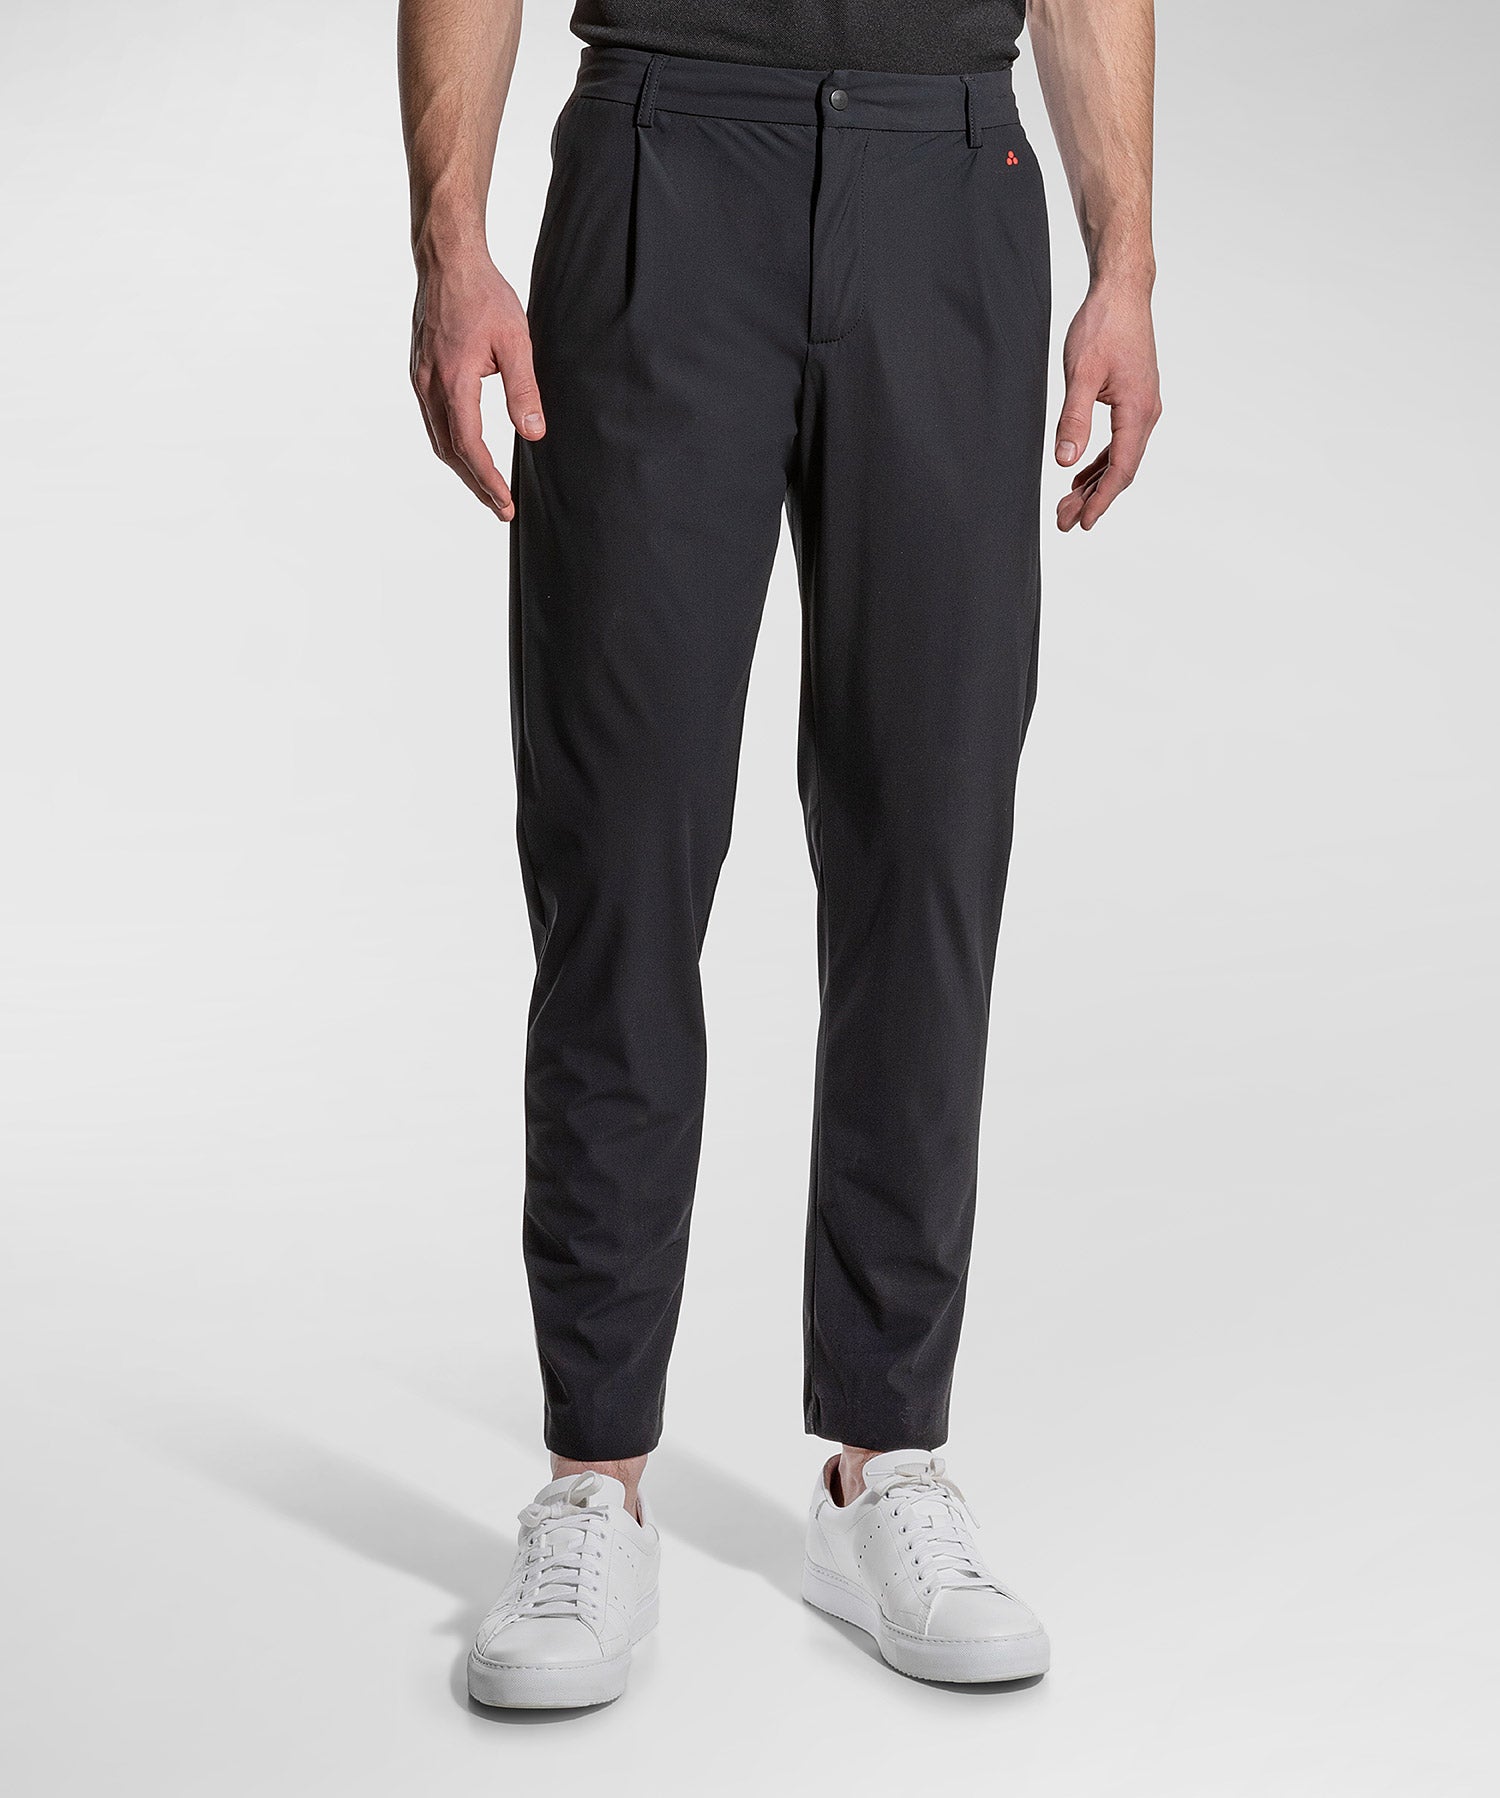 Pantaloni in Scuba Light, Confort Fit / Blu - Ideal Moda